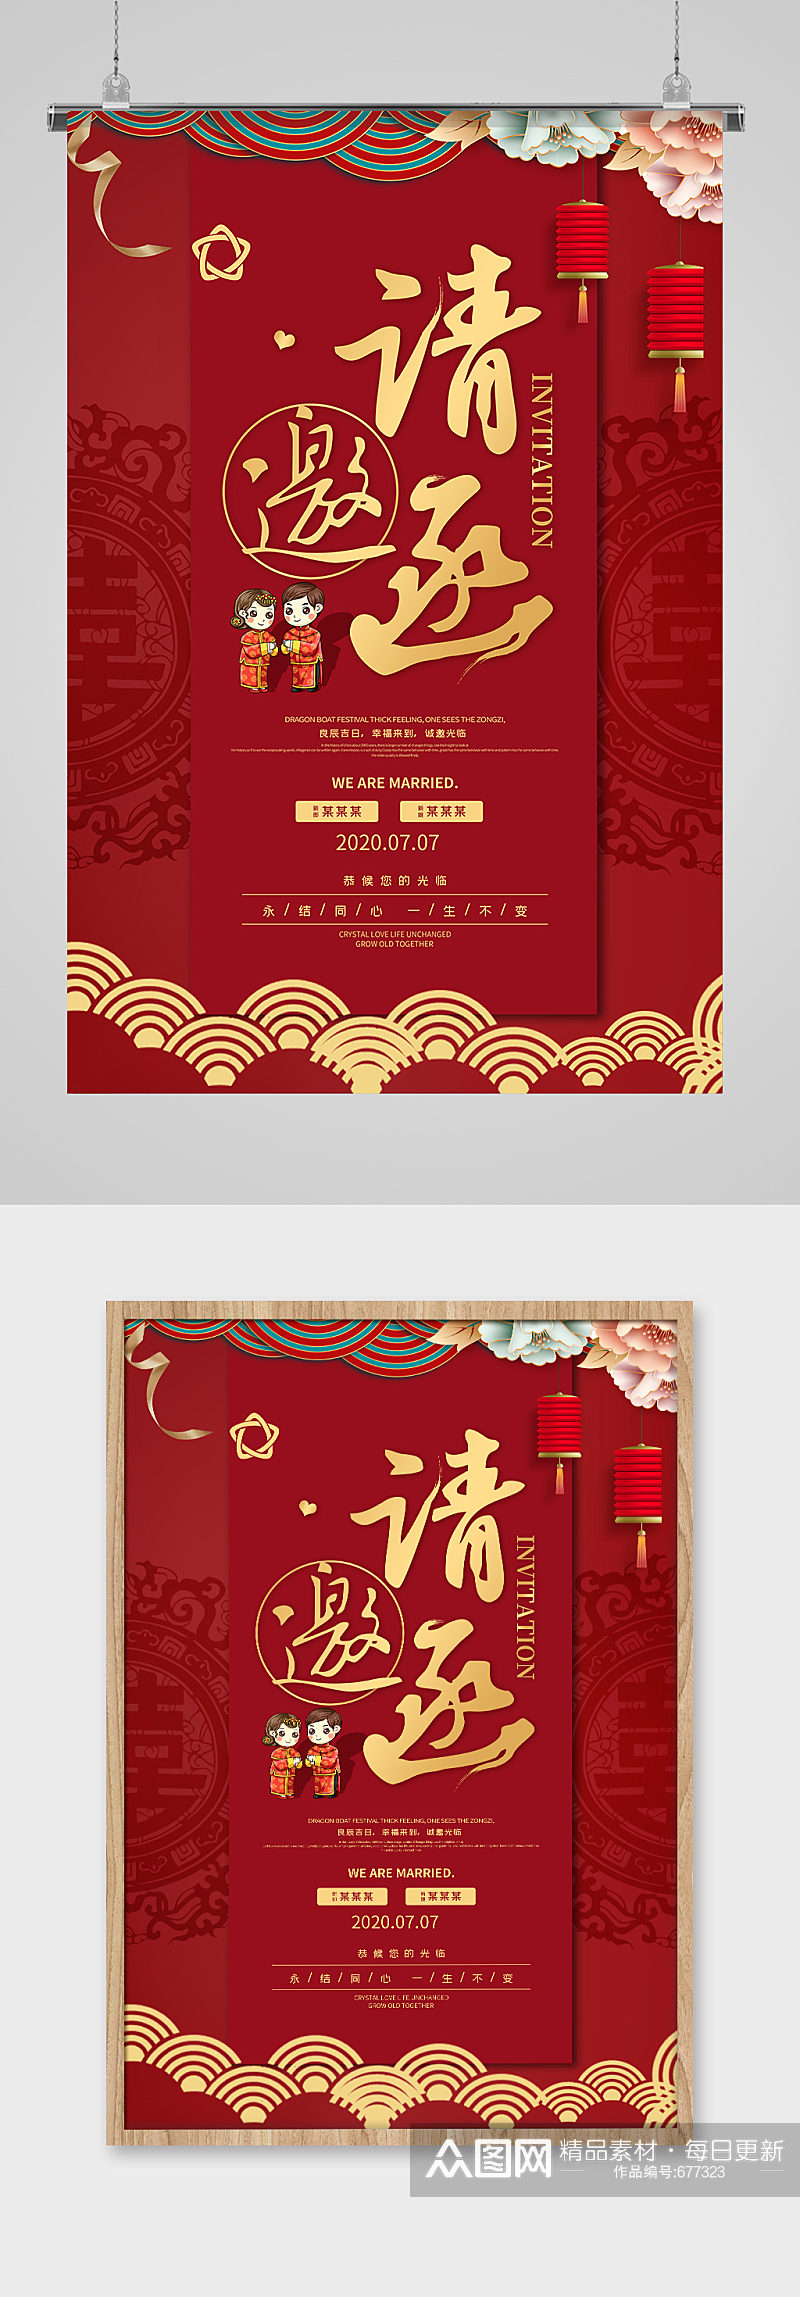 中式创意婚礼邀请函海报素材